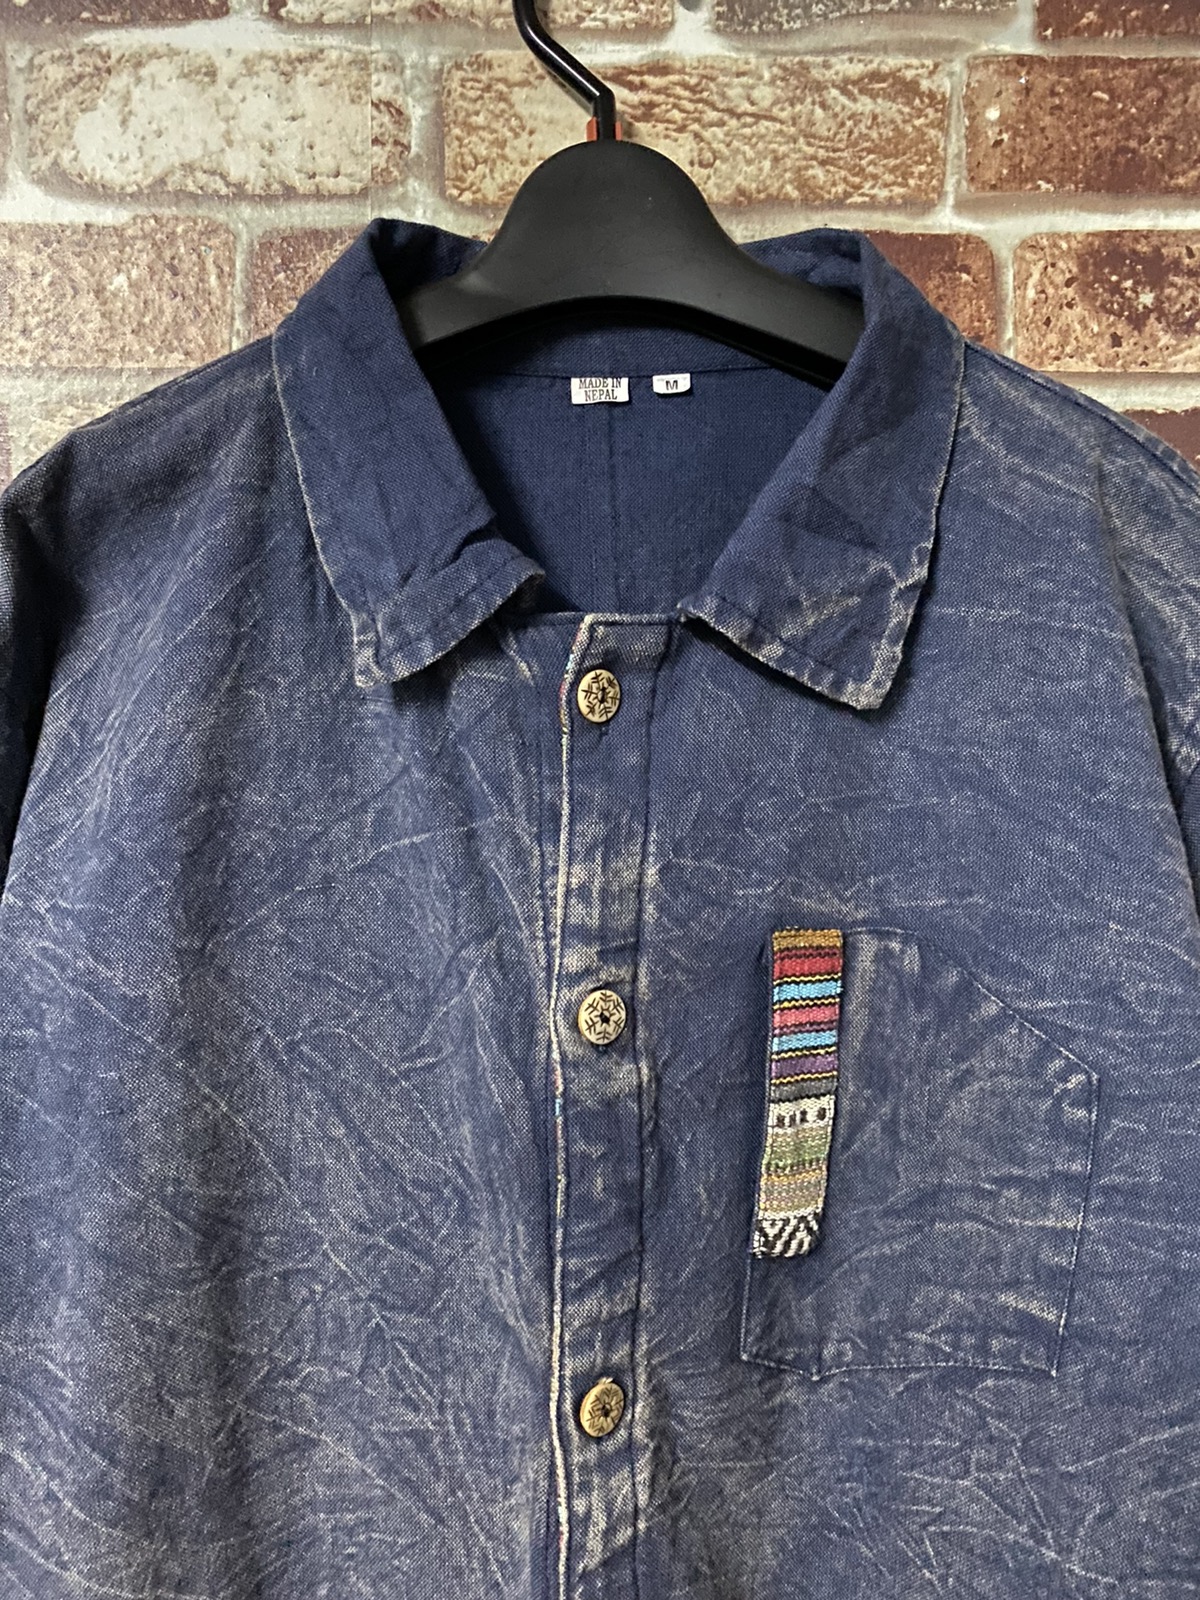 Archival Clothing - Core Jacket Shirt Aspired Kapital - 4